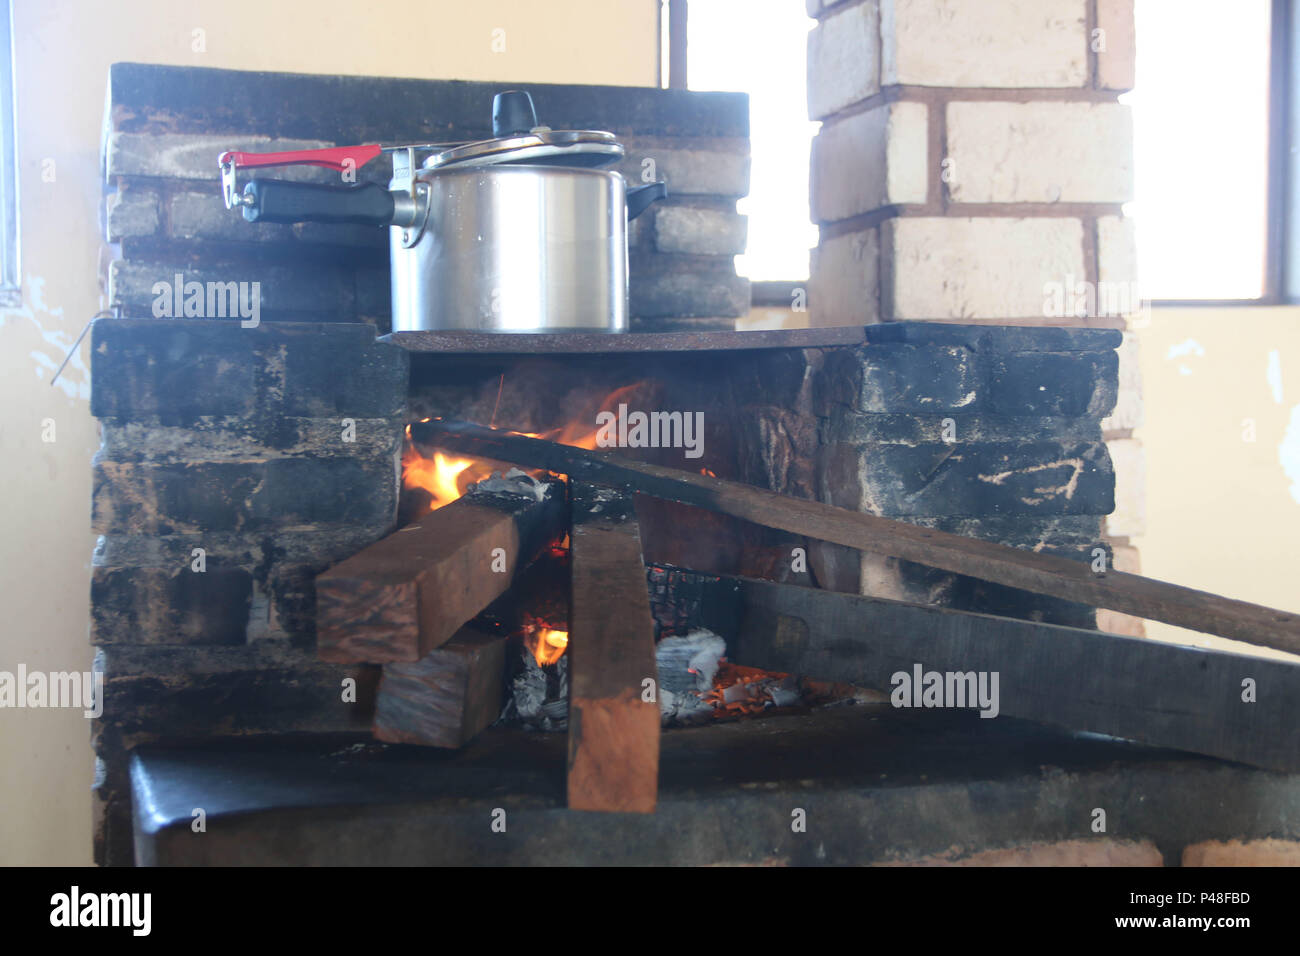 NOVA ANDRADINA, MS - 24.03.2015: COMIDA DE FAZENDA - fogão a lenha em Cozinha de Fazenda localizada na Cidade de Nova Andradina-MS. (Foto: André Chaco/Fotoarena) Stockfoto